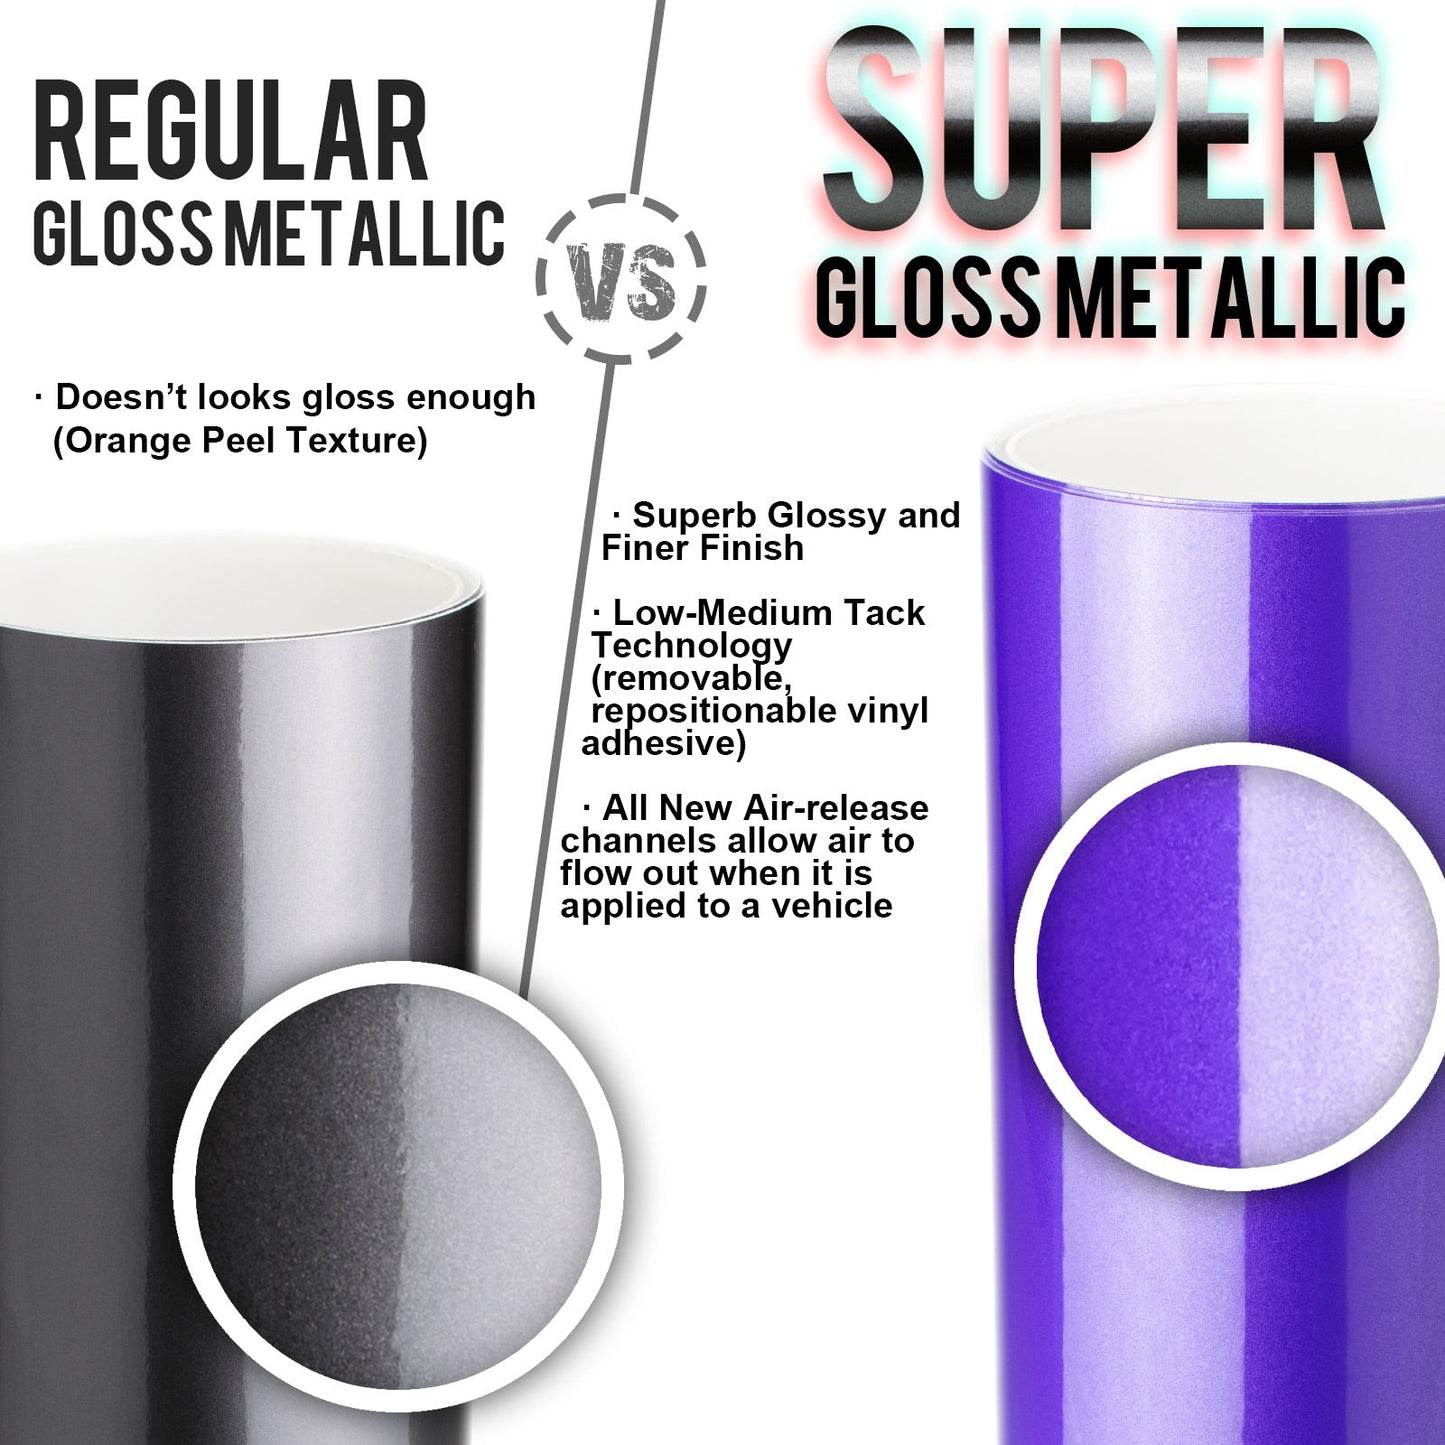 Super Gloss Metallic Intense Blue Vinyl Wrap